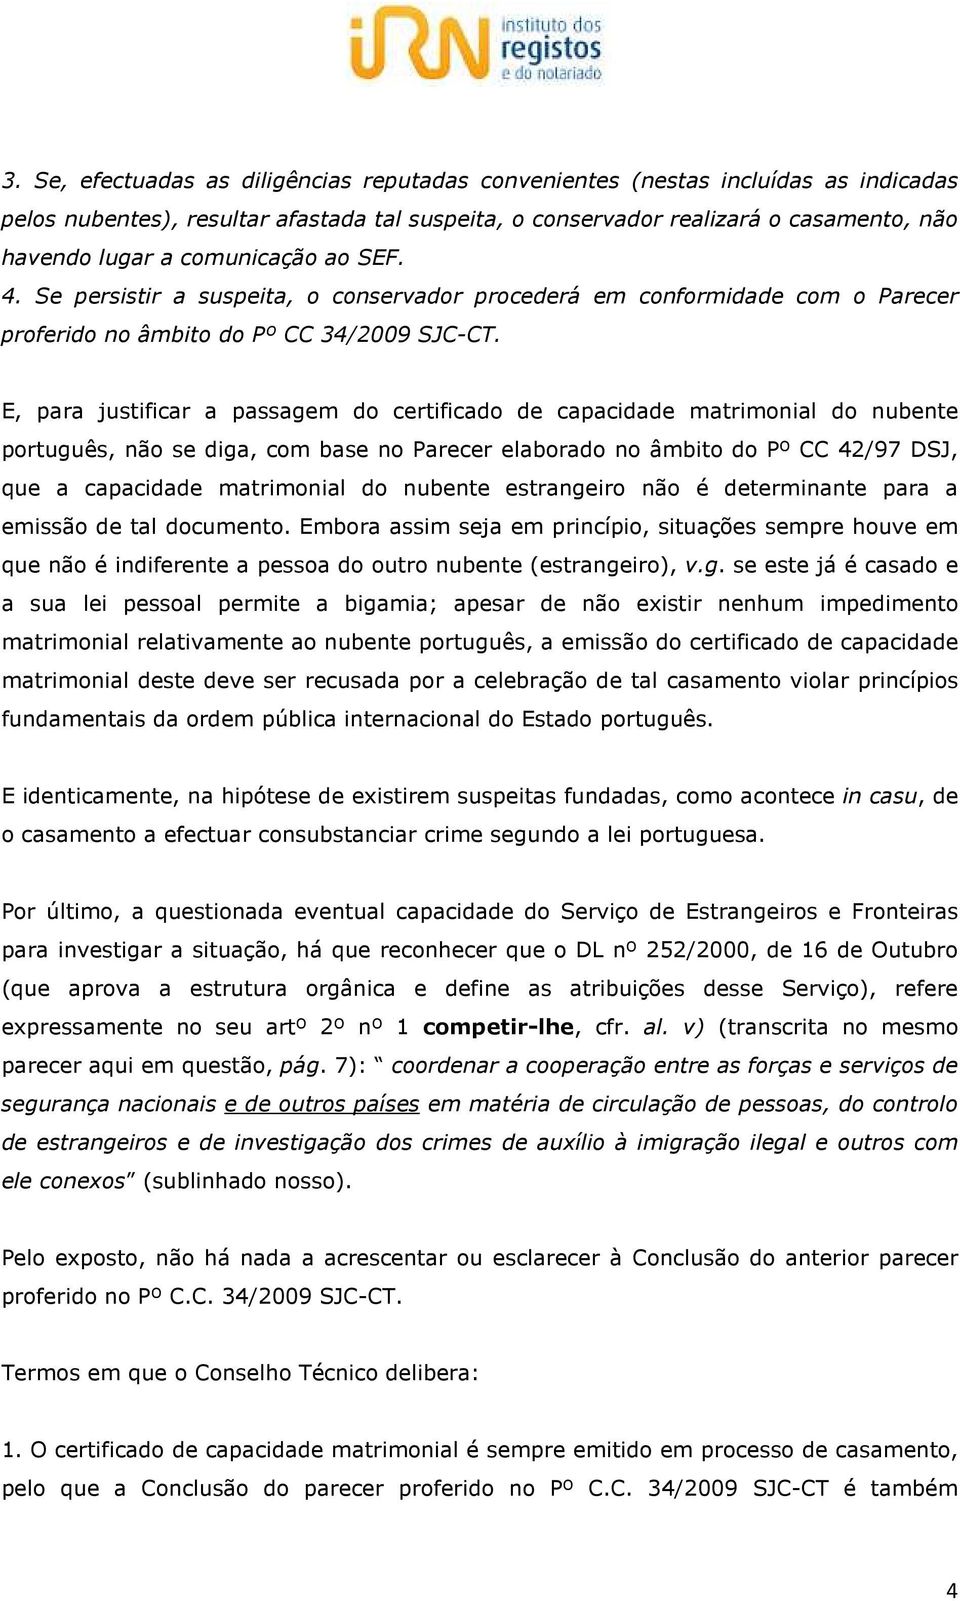 E, para justificar a passagem do certificado de capacidade matrimonial do nubente português, não se diga, com base no Parecer elaborado no âmbito do Pº CC 42/97 DSJ, que a capacidade matrimonial do